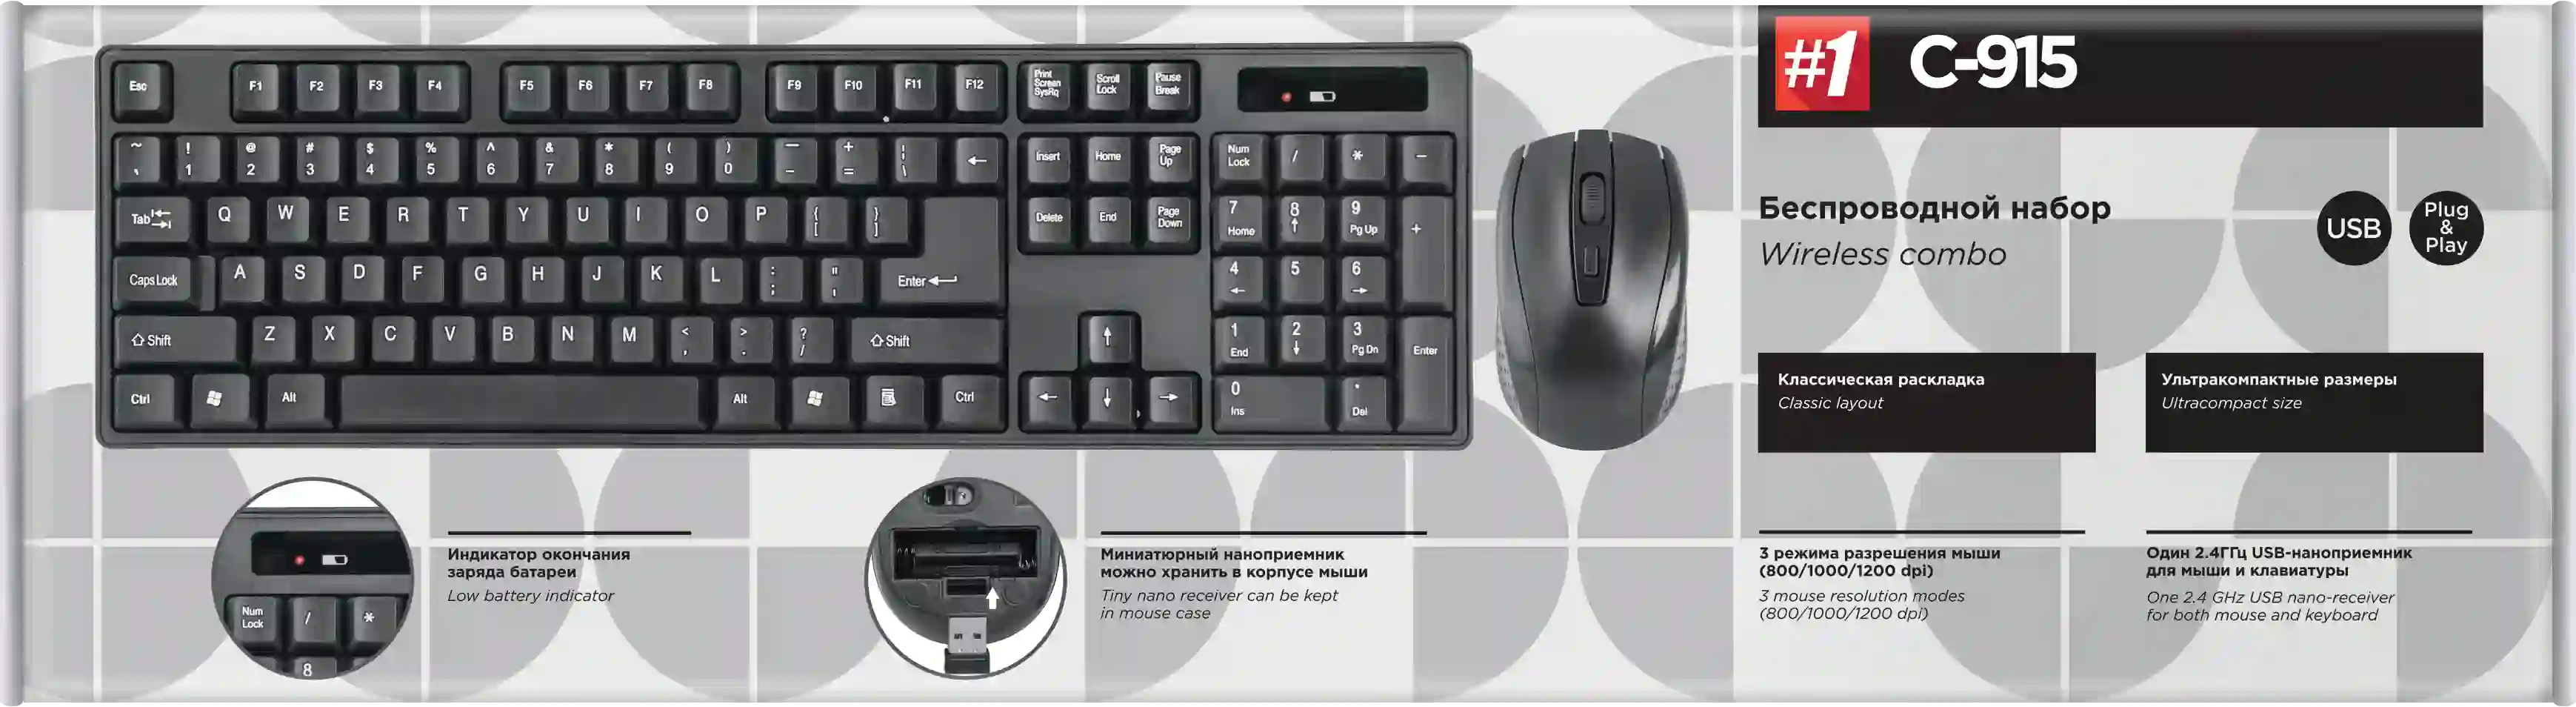 Комплект (клавиатура + мышь) беспроводной DEFENDER C-915 (45915)